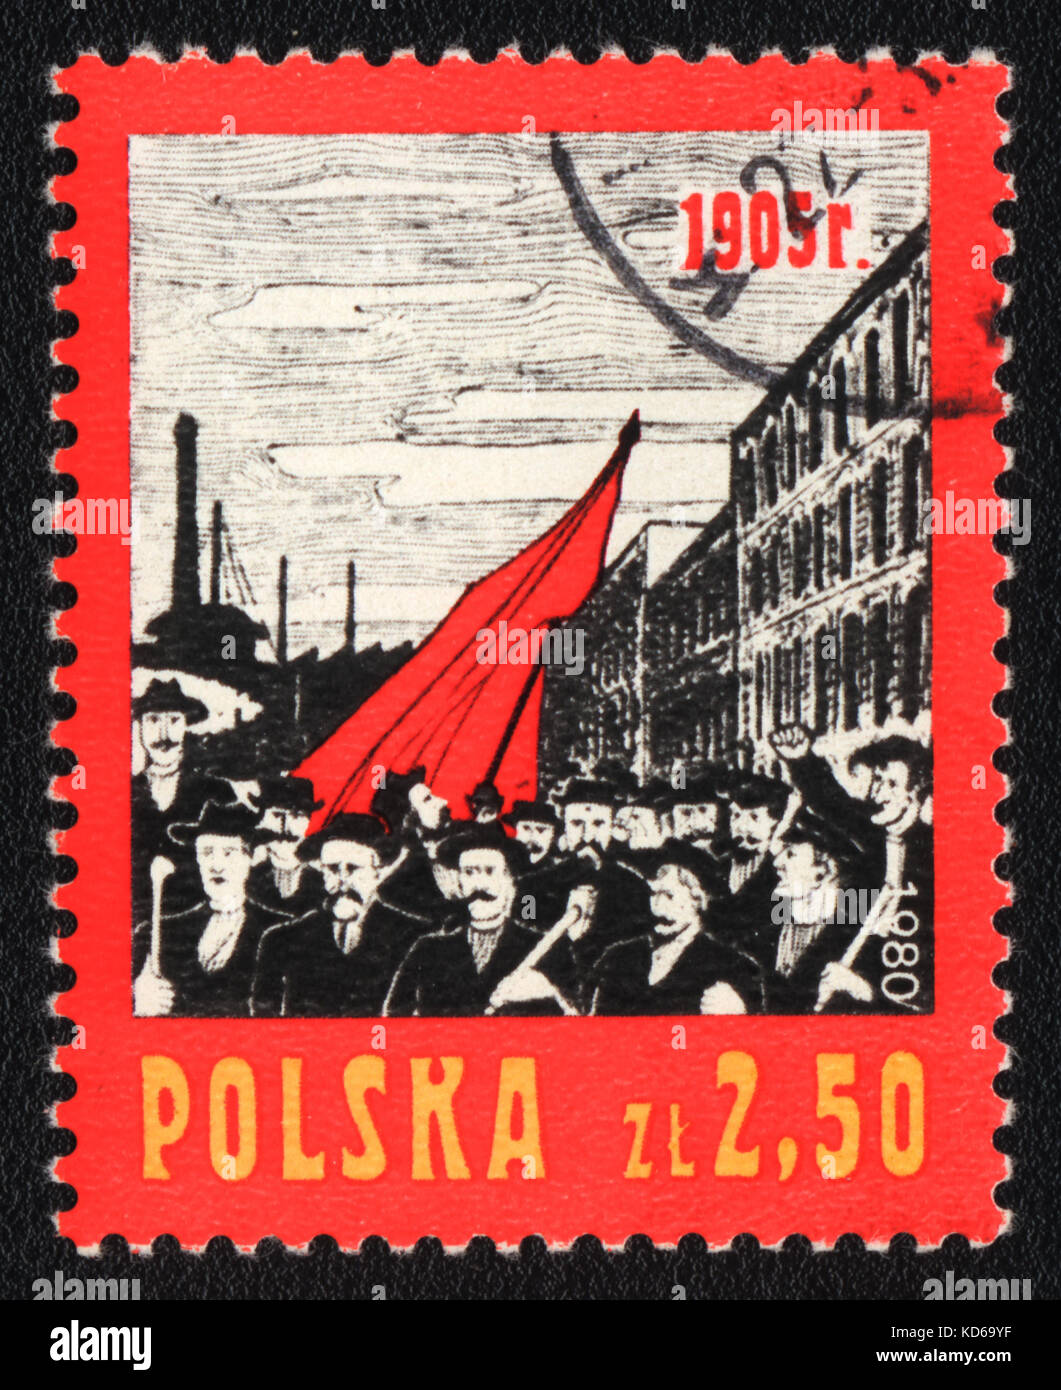 Un timbre-poste imprimé en Pologne montre démonstration pratique, vers 1980 Banque D'Images